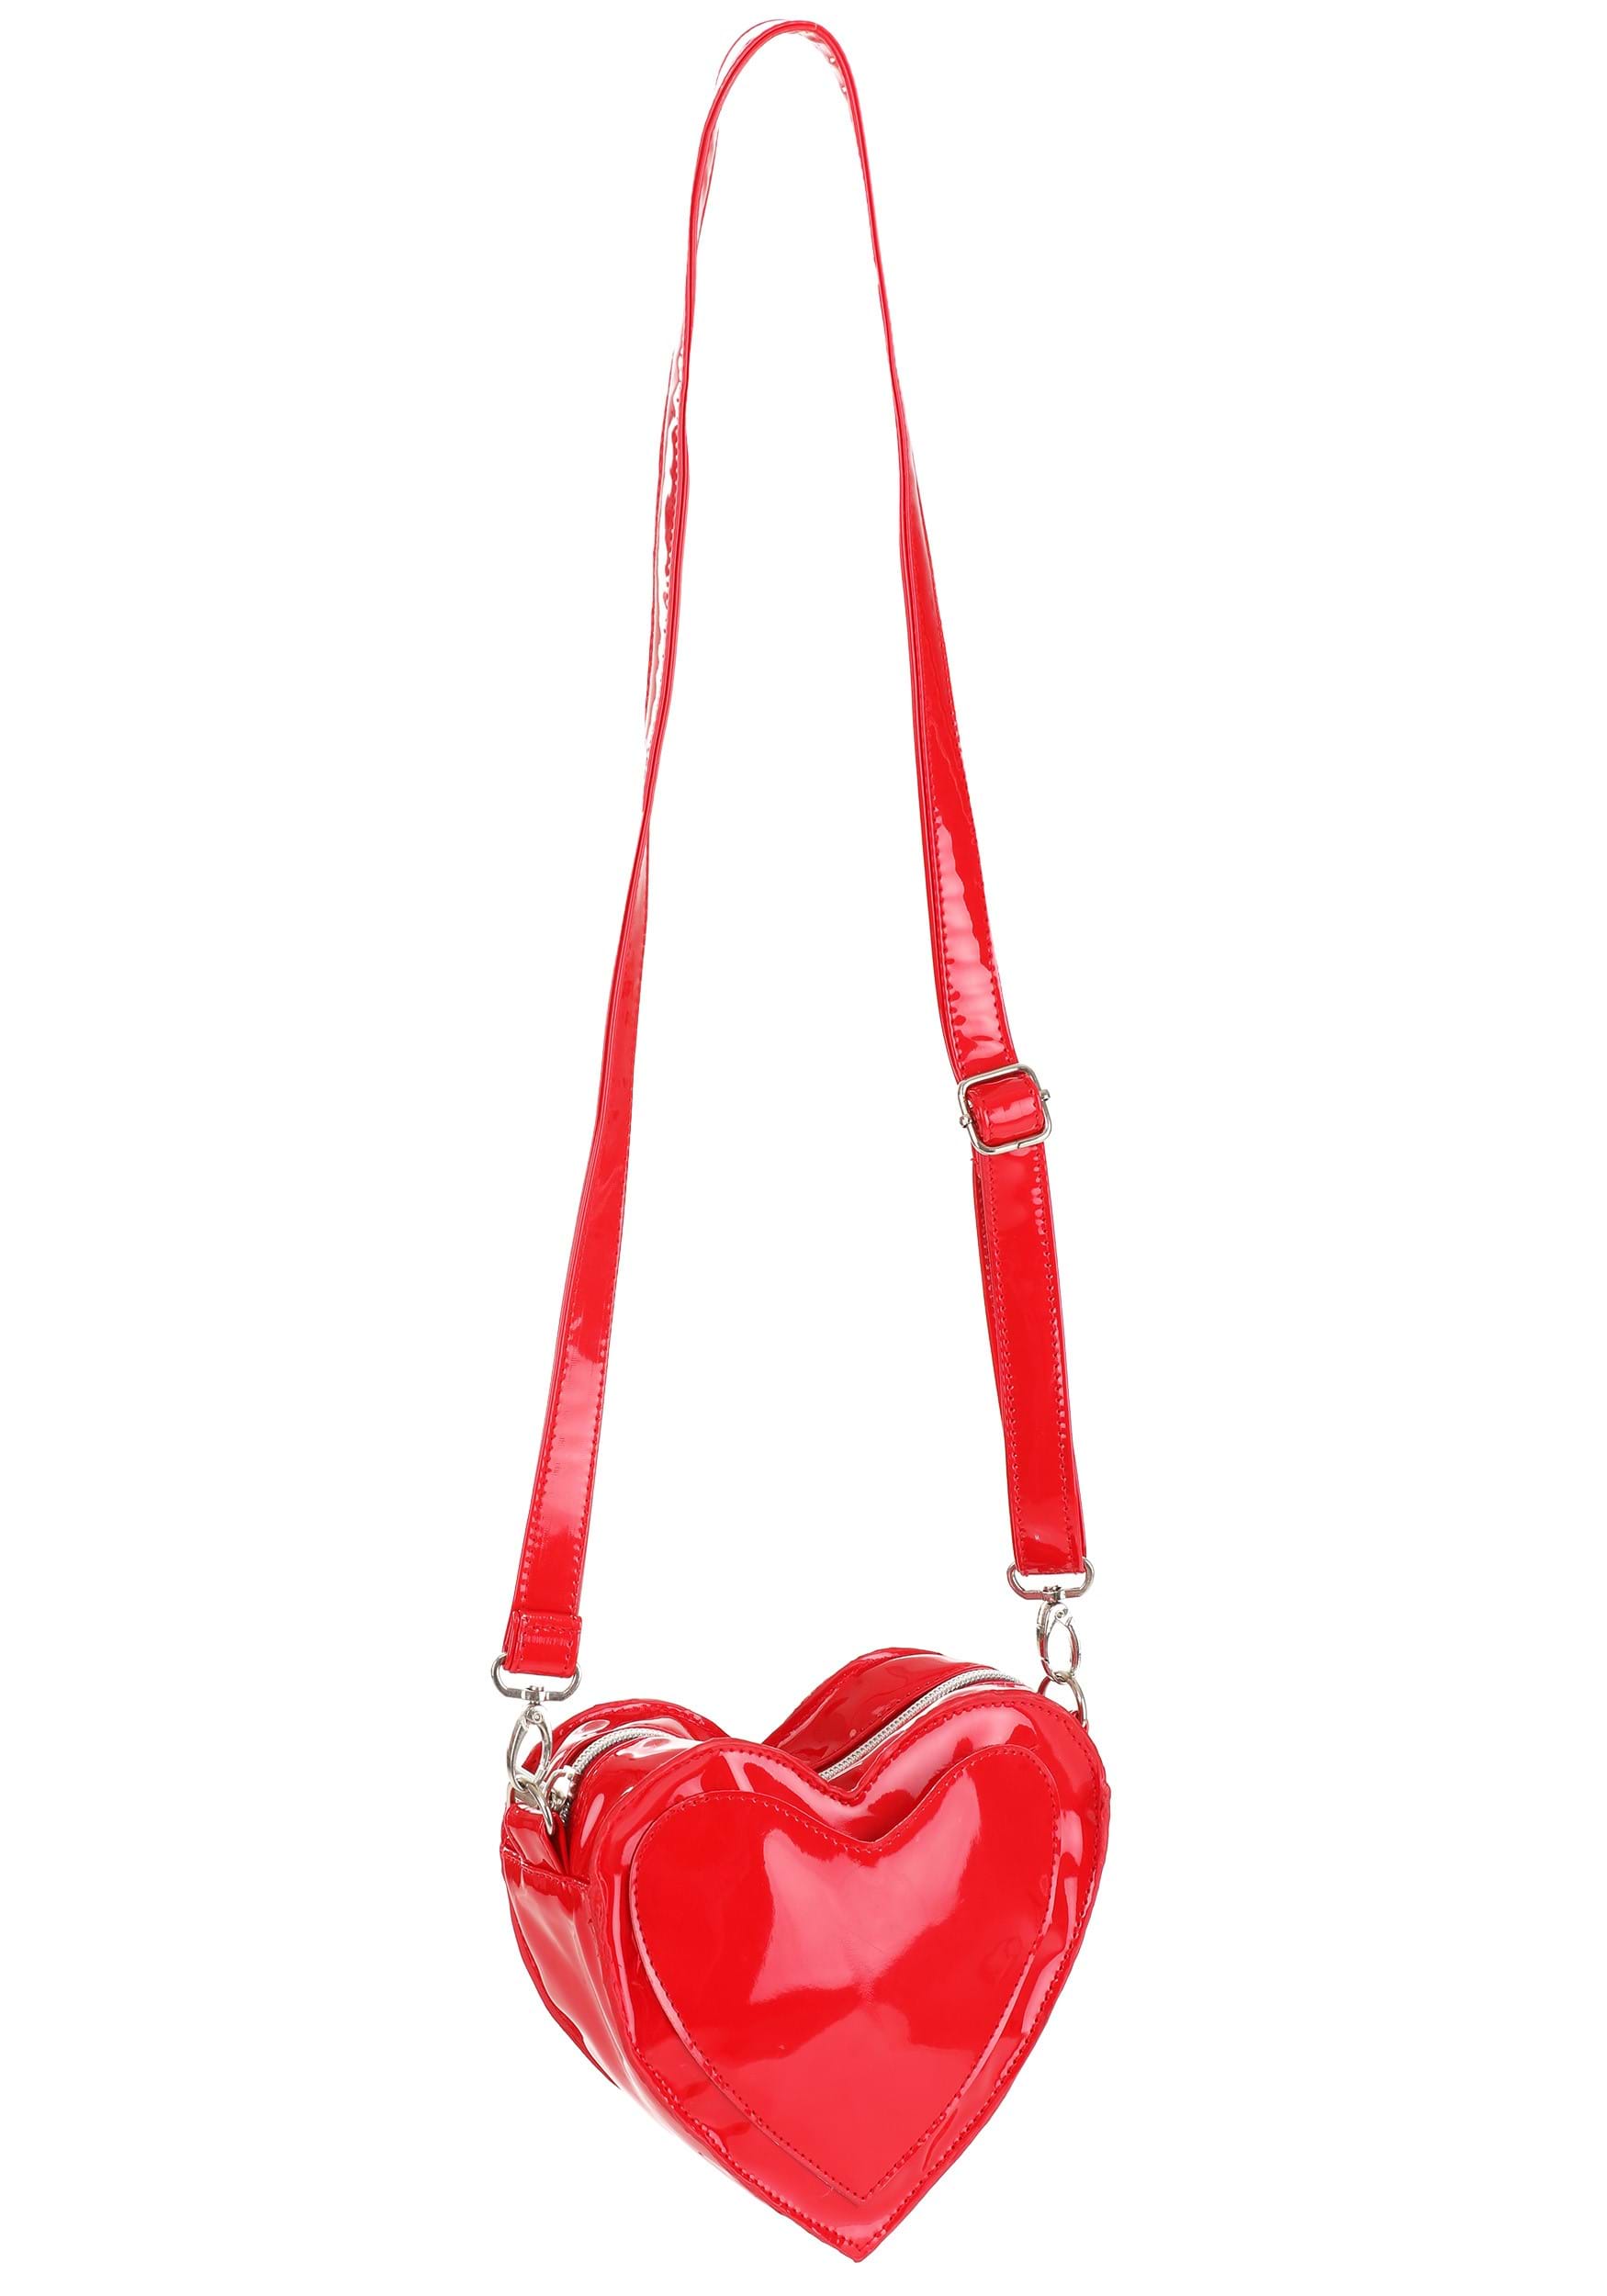 My Valentine Red Heart Purse , Valentine's Day Accessories